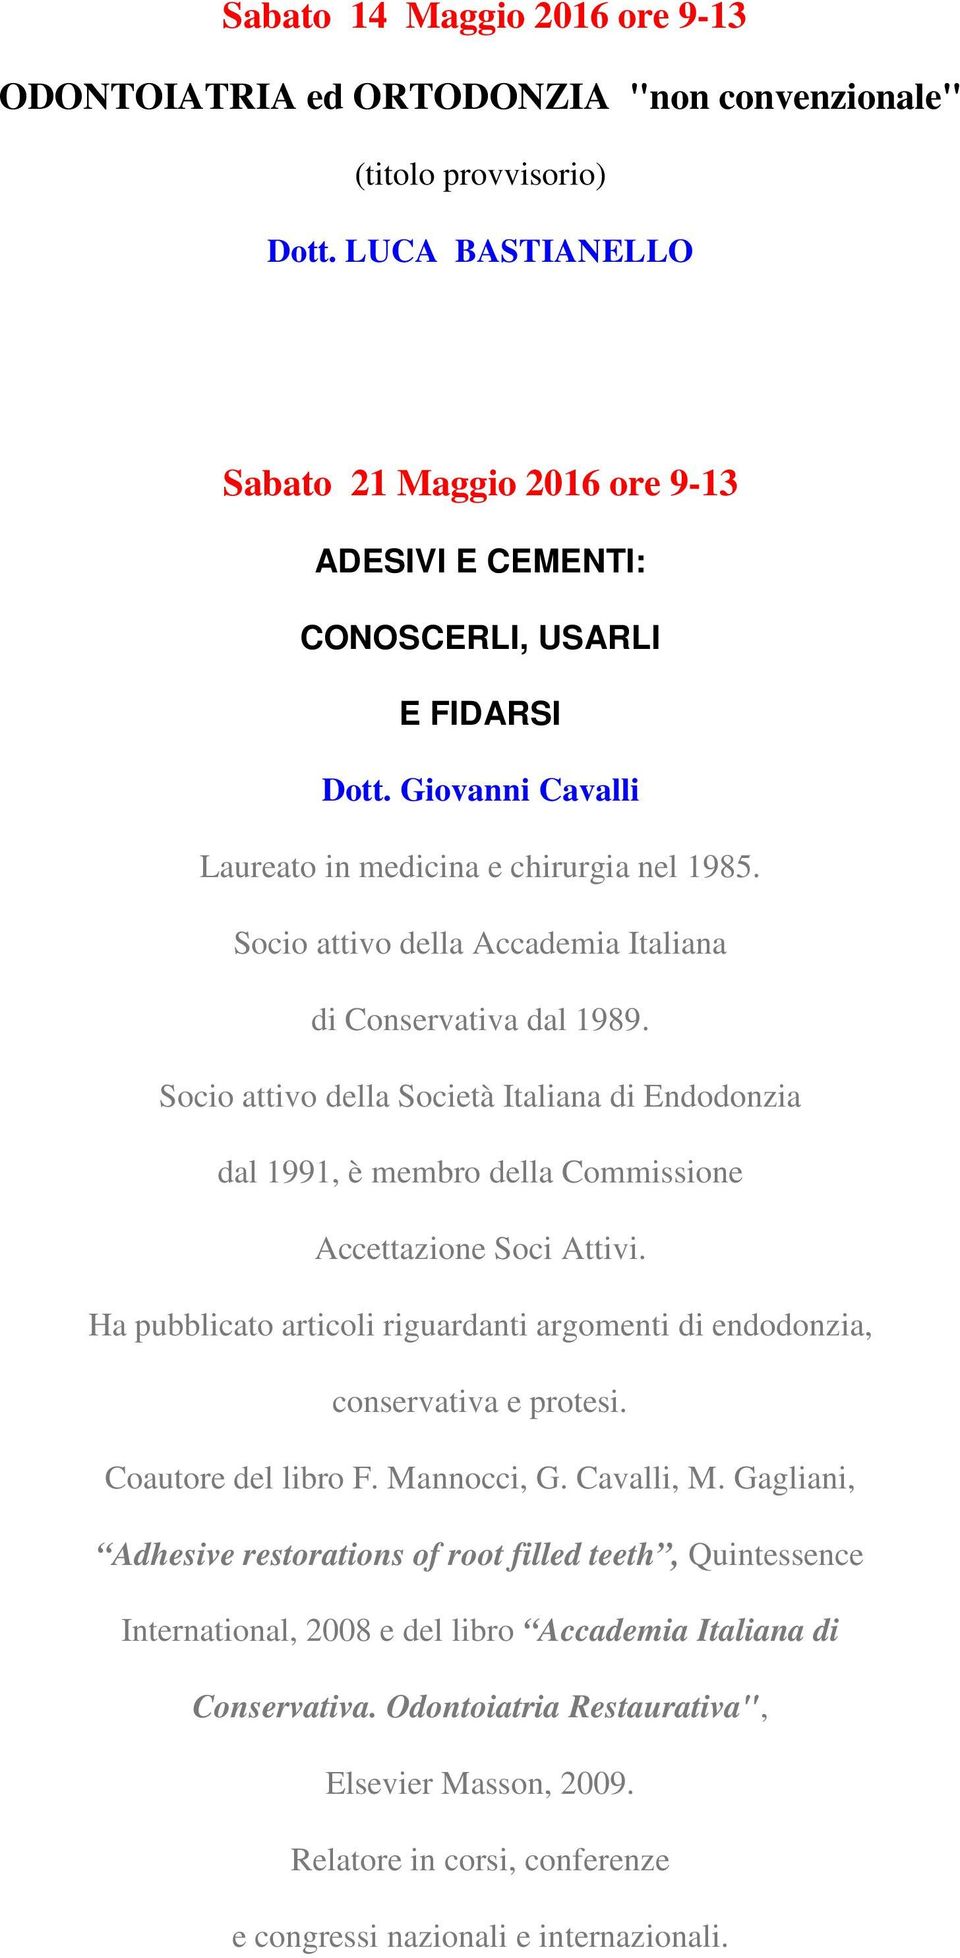 Socio attivo della Accademia Italiana di Conservativa dal 1989. Socio attivo della Società Italiana di Endodonzia dal 1991, è membro della Commissione Accettazione Soci Attivi.